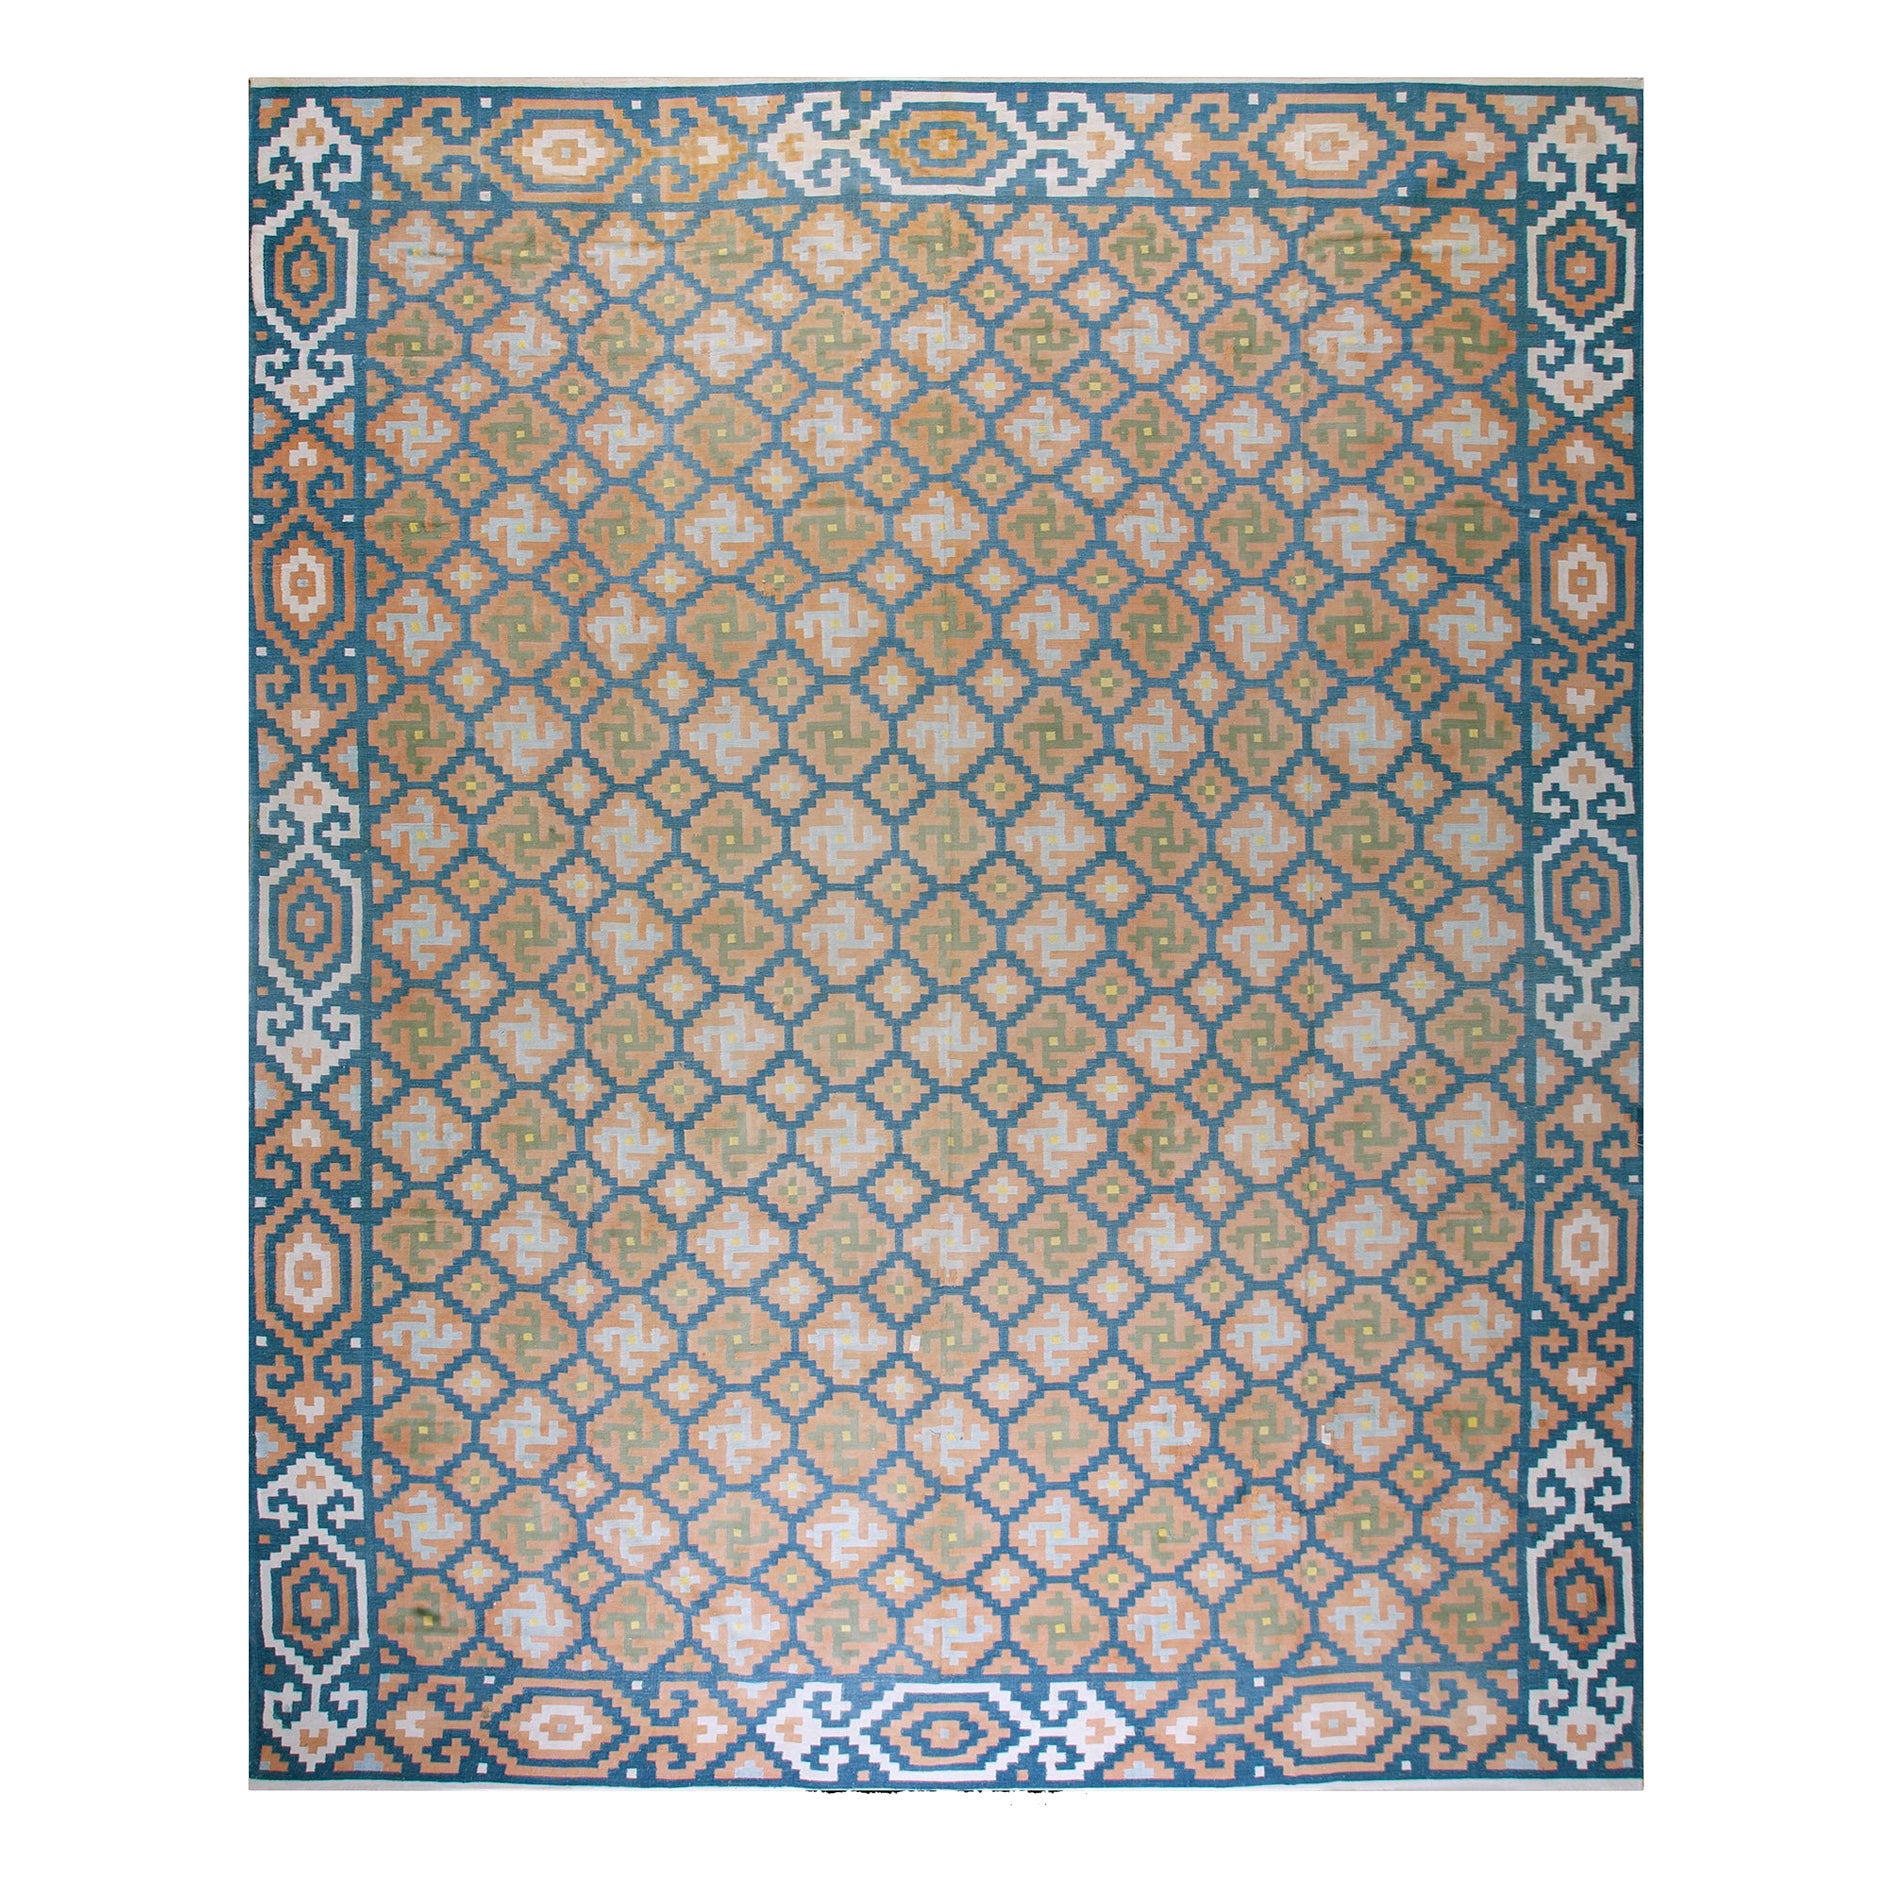 1930er Jahre Indischer Dhurrie-Teppich aus Baumwolle ( 12'2" x 15'2" - 371 x 462 )